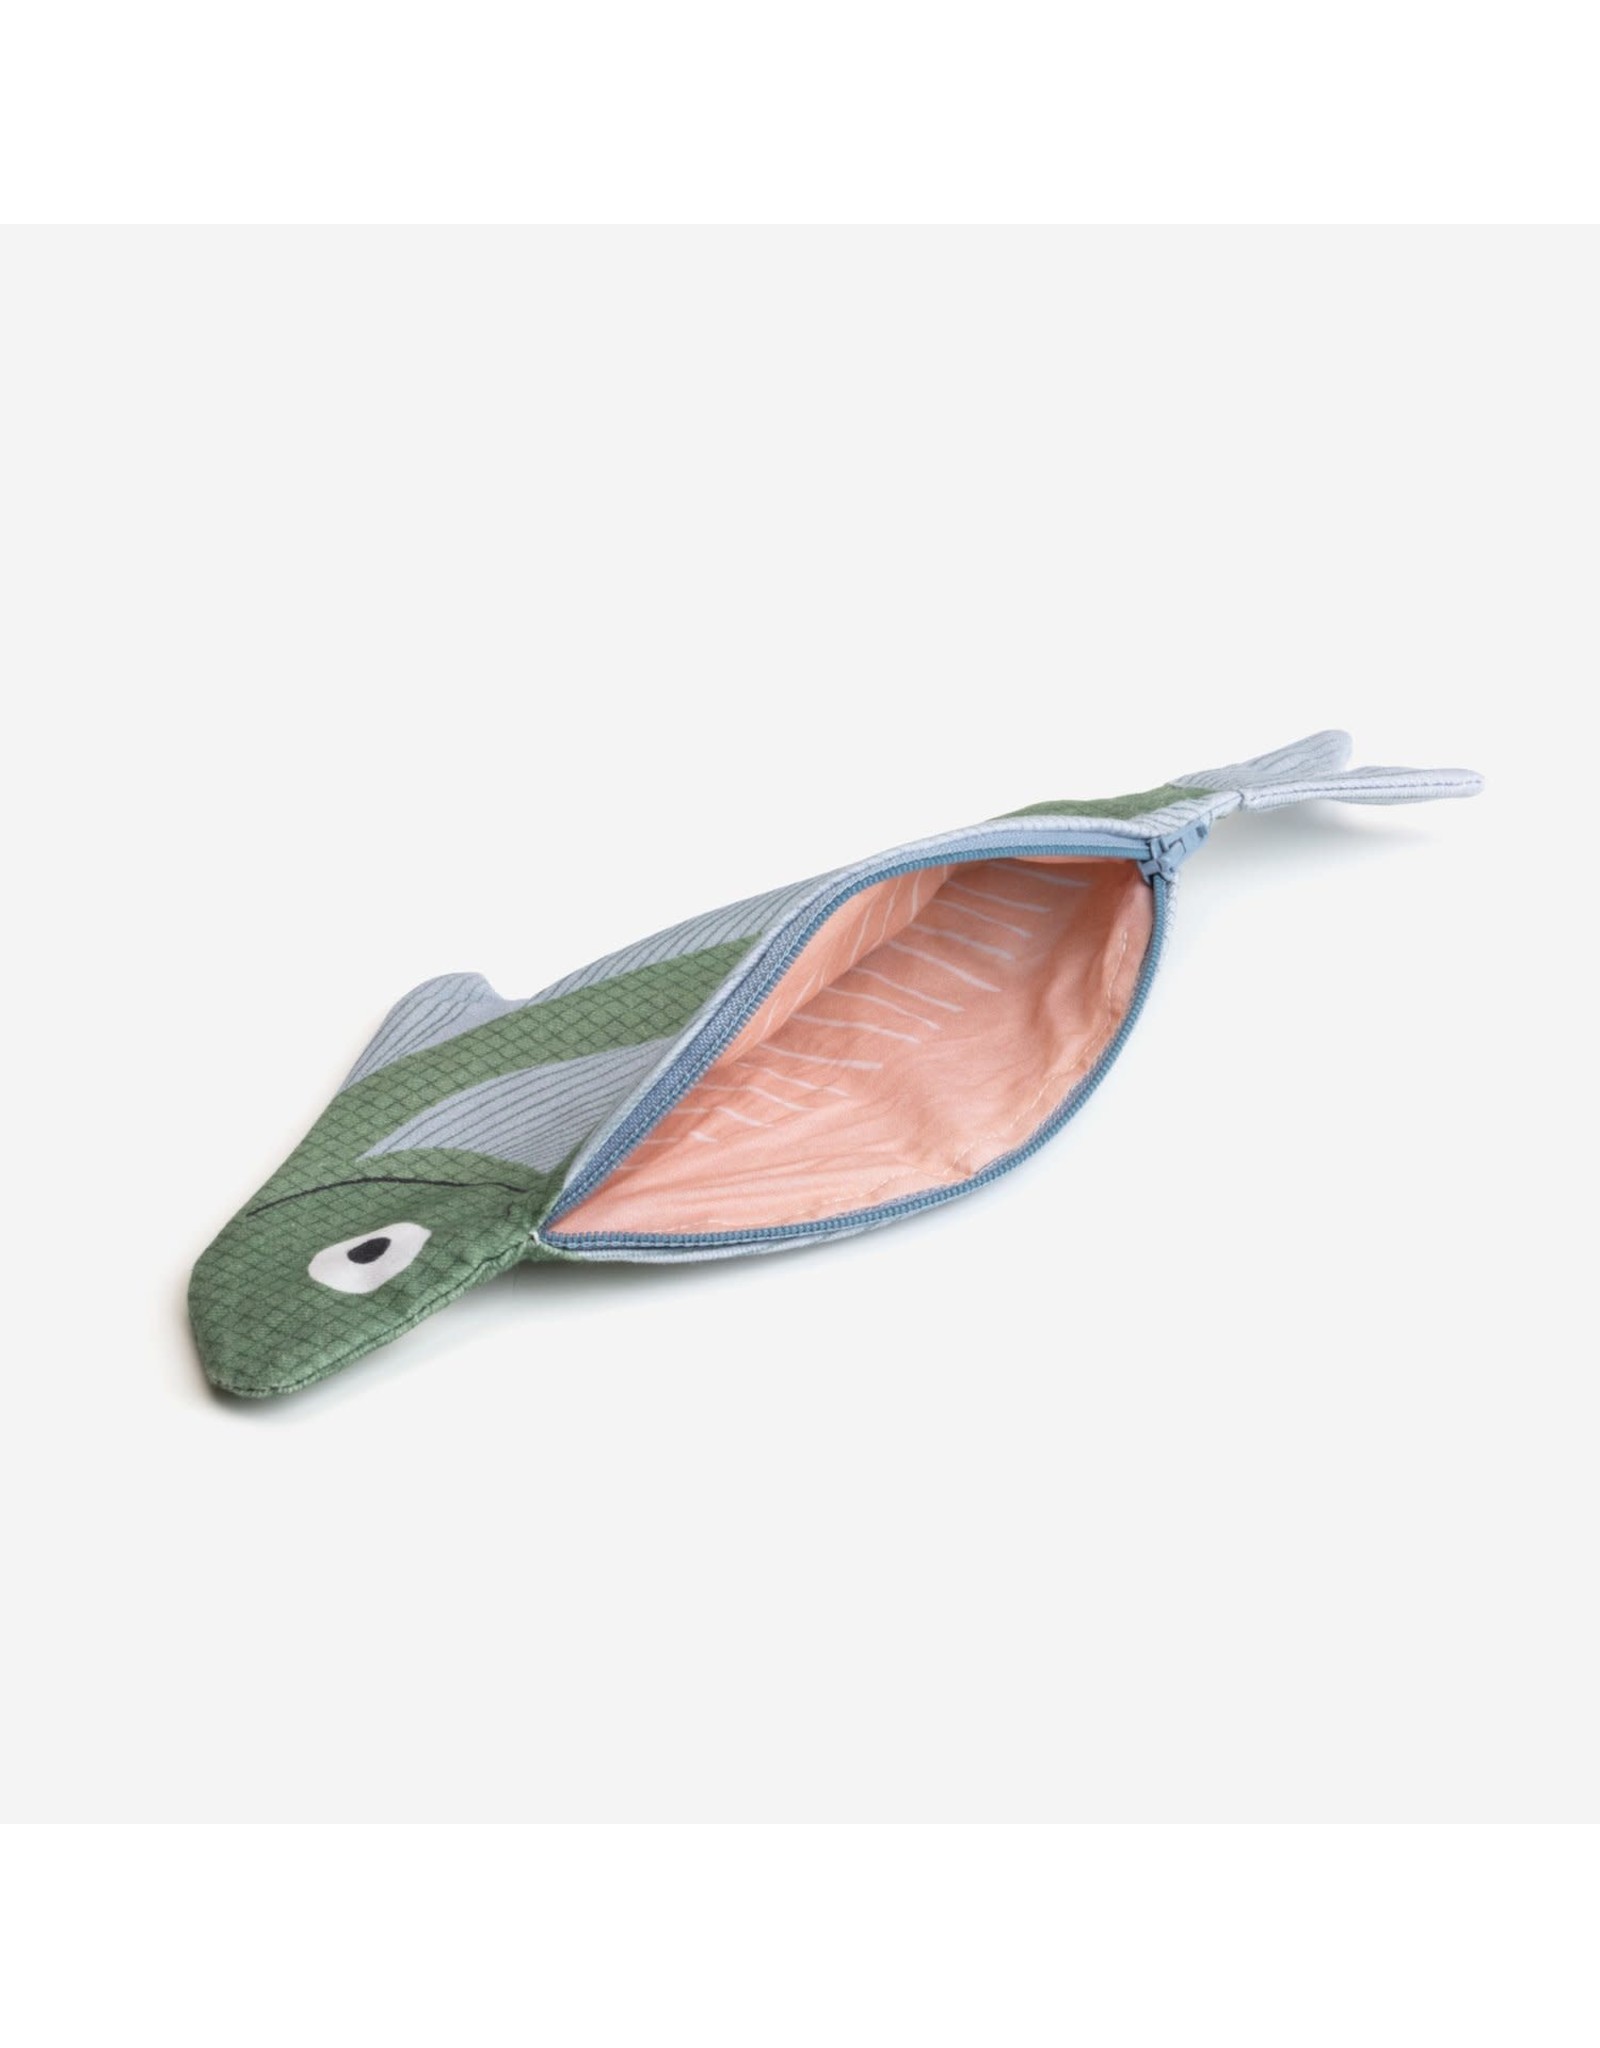 Don Fisher Ritstasje - Sandfish - Herkomst : Californische zee - 28 x 12,5 cm - 100% Katoen